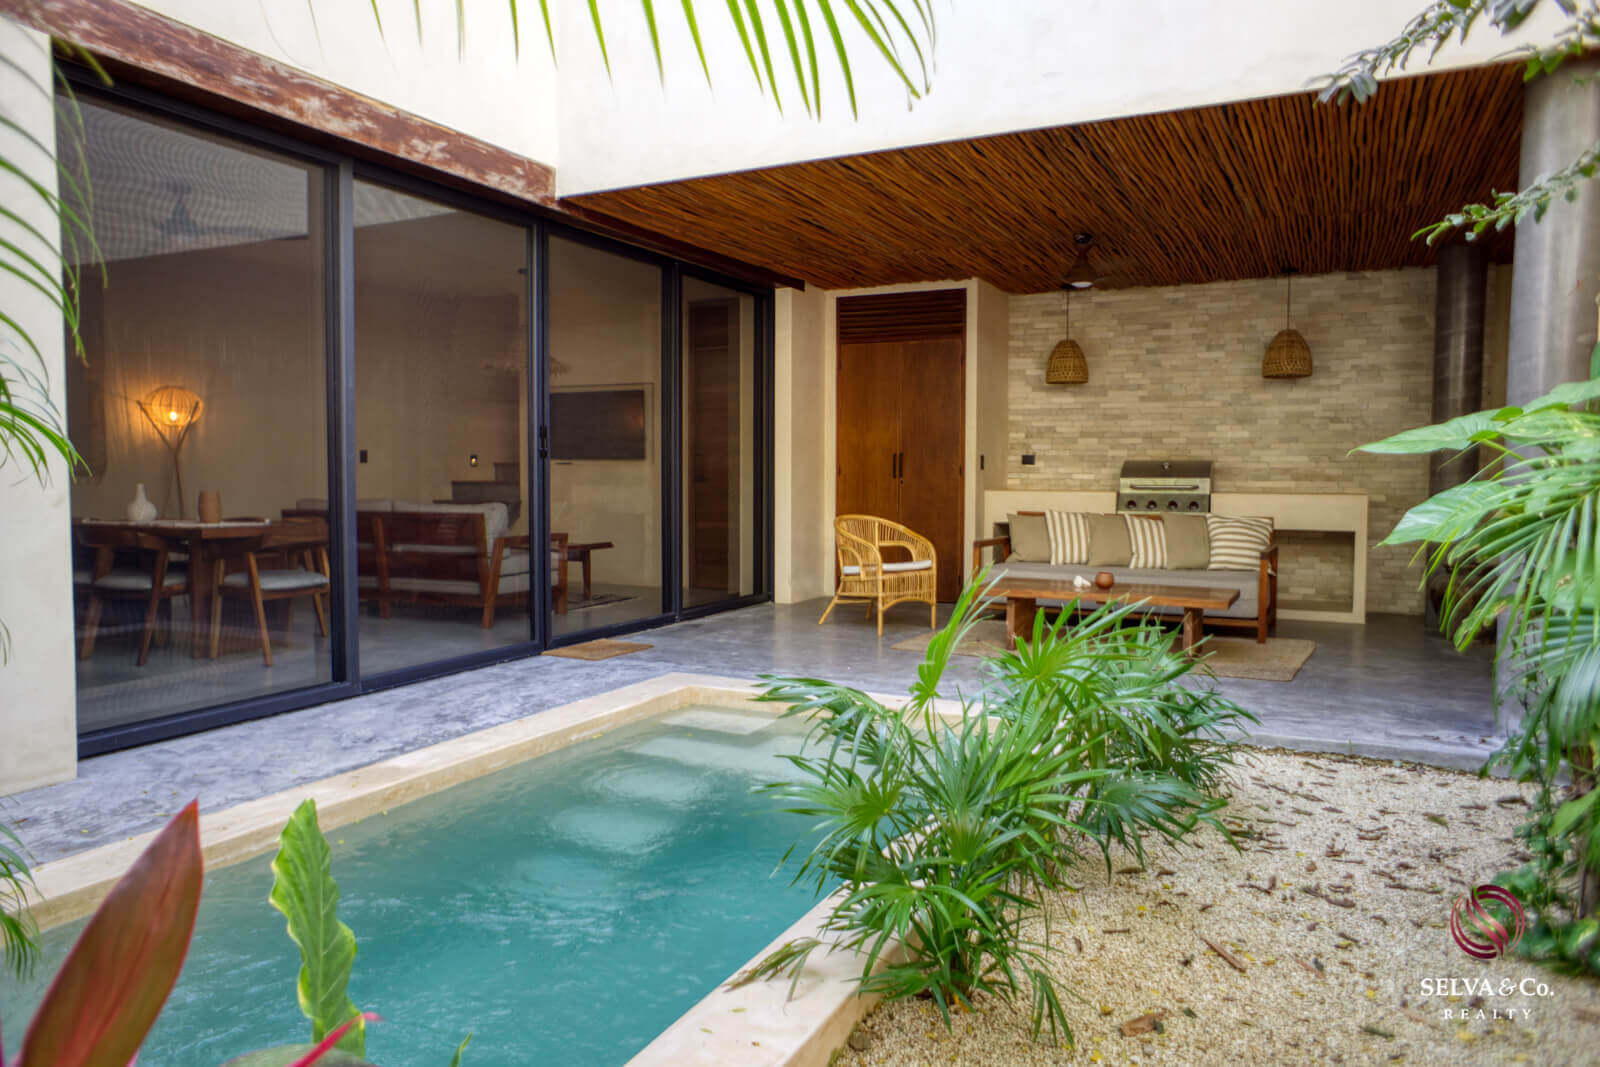 Villa con alberca privada , 2 Rec. +estudio, en residencial privado, rodeado de selva, con restaurante, co-working, area de yoga y fitness,